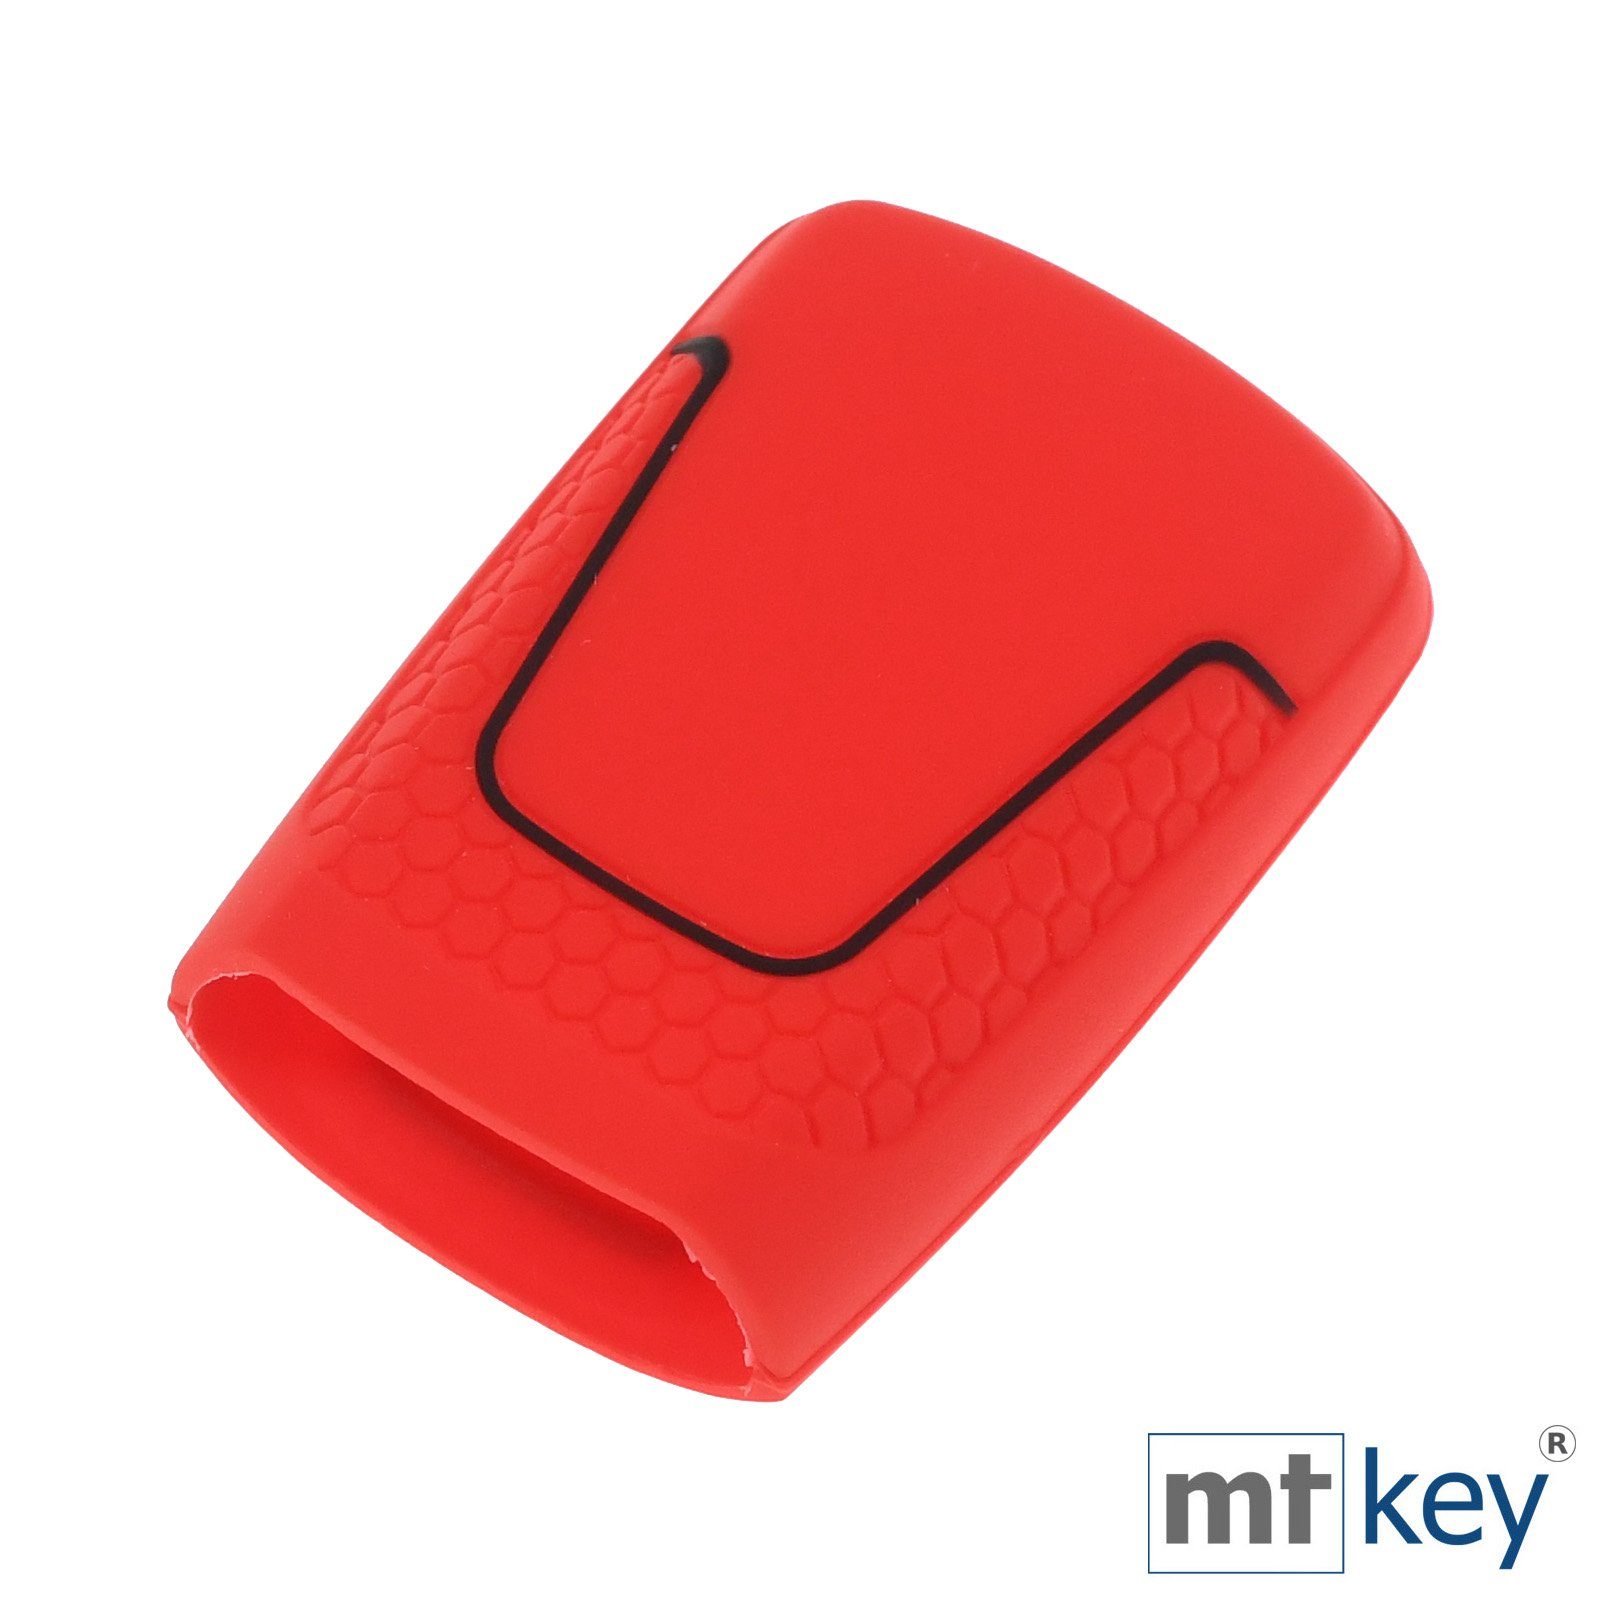 mt-key A6 Tasten Schlüsselband, A5 Audi Design mit Rot Q8 A4 KEYLESS Q5 Autoschlüssel Schutzhülle A7 SMARTKEY A8 Schlüsseltasche Q2 Q7 3 Wabe im für Silikon TT